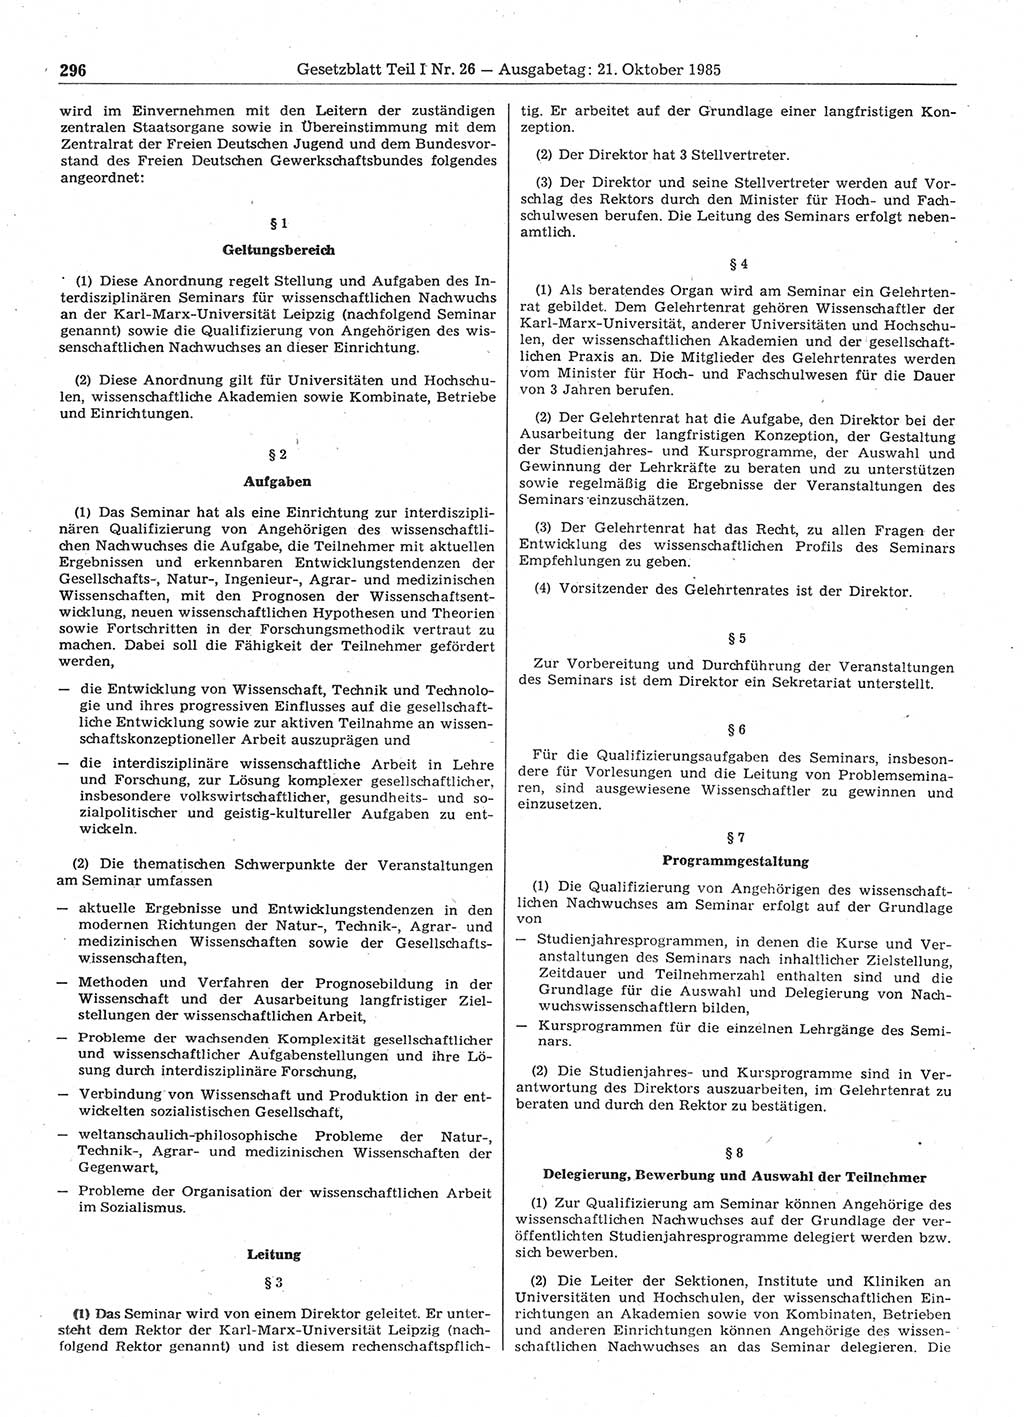 Gesetzblatt (GBl.) der Deutschen Demokratischen Republik (DDR) Teil Ⅰ 1985, Seite 296 (GBl. DDR Ⅰ 1985, S. 296)